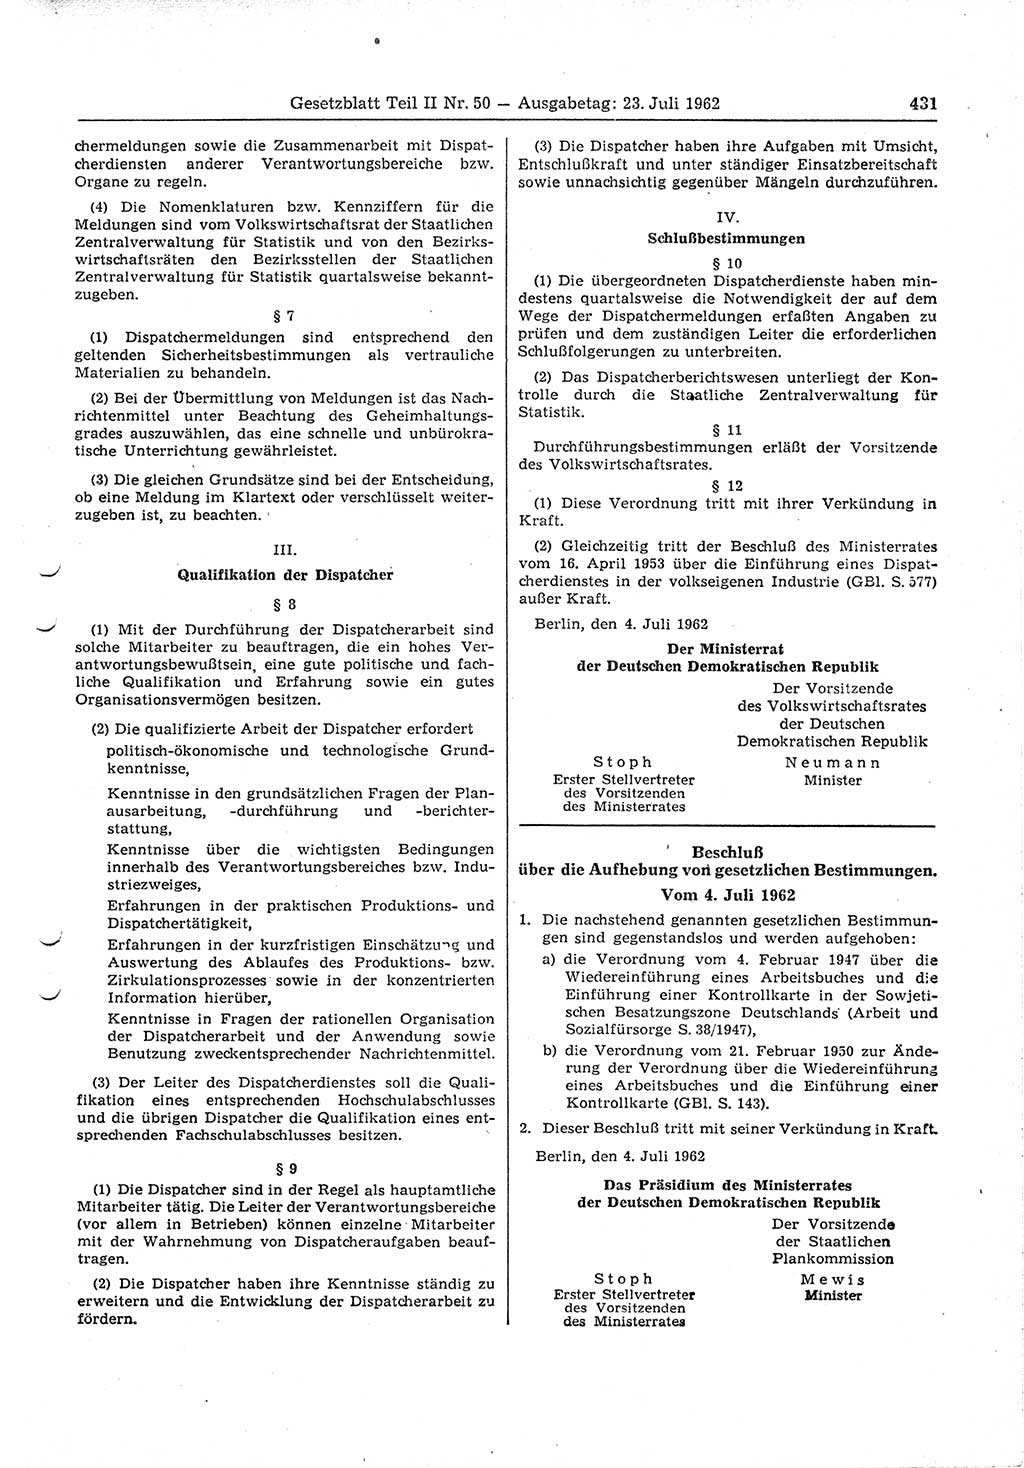 Gesetzblatt (GBl.) der Deutschen Demokratischen Republik (DDR) Teil ⅠⅠ 1962, Seite 431 (GBl. DDR ⅠⅠ 1962, S. 431)